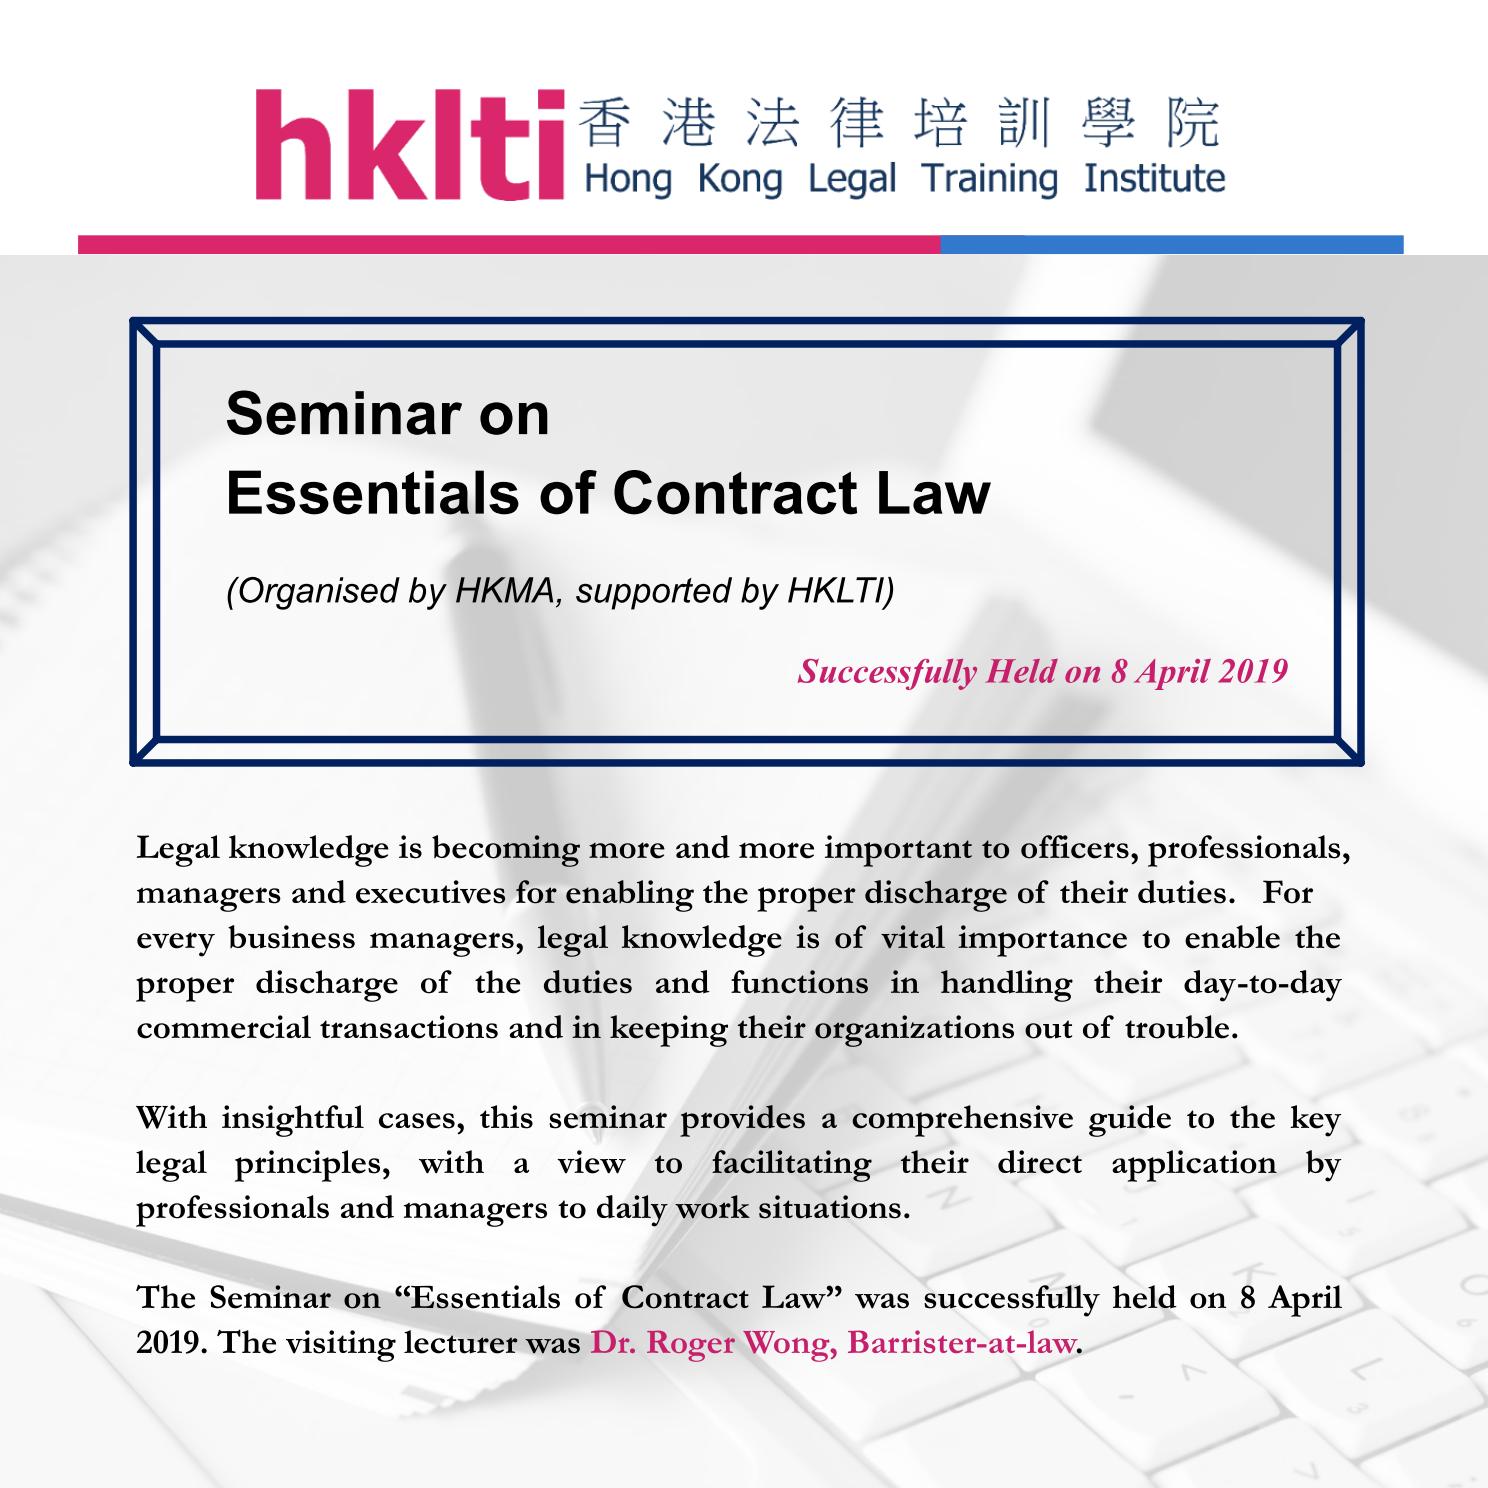 hklti hkma essentials of contract law seminar report 20190408